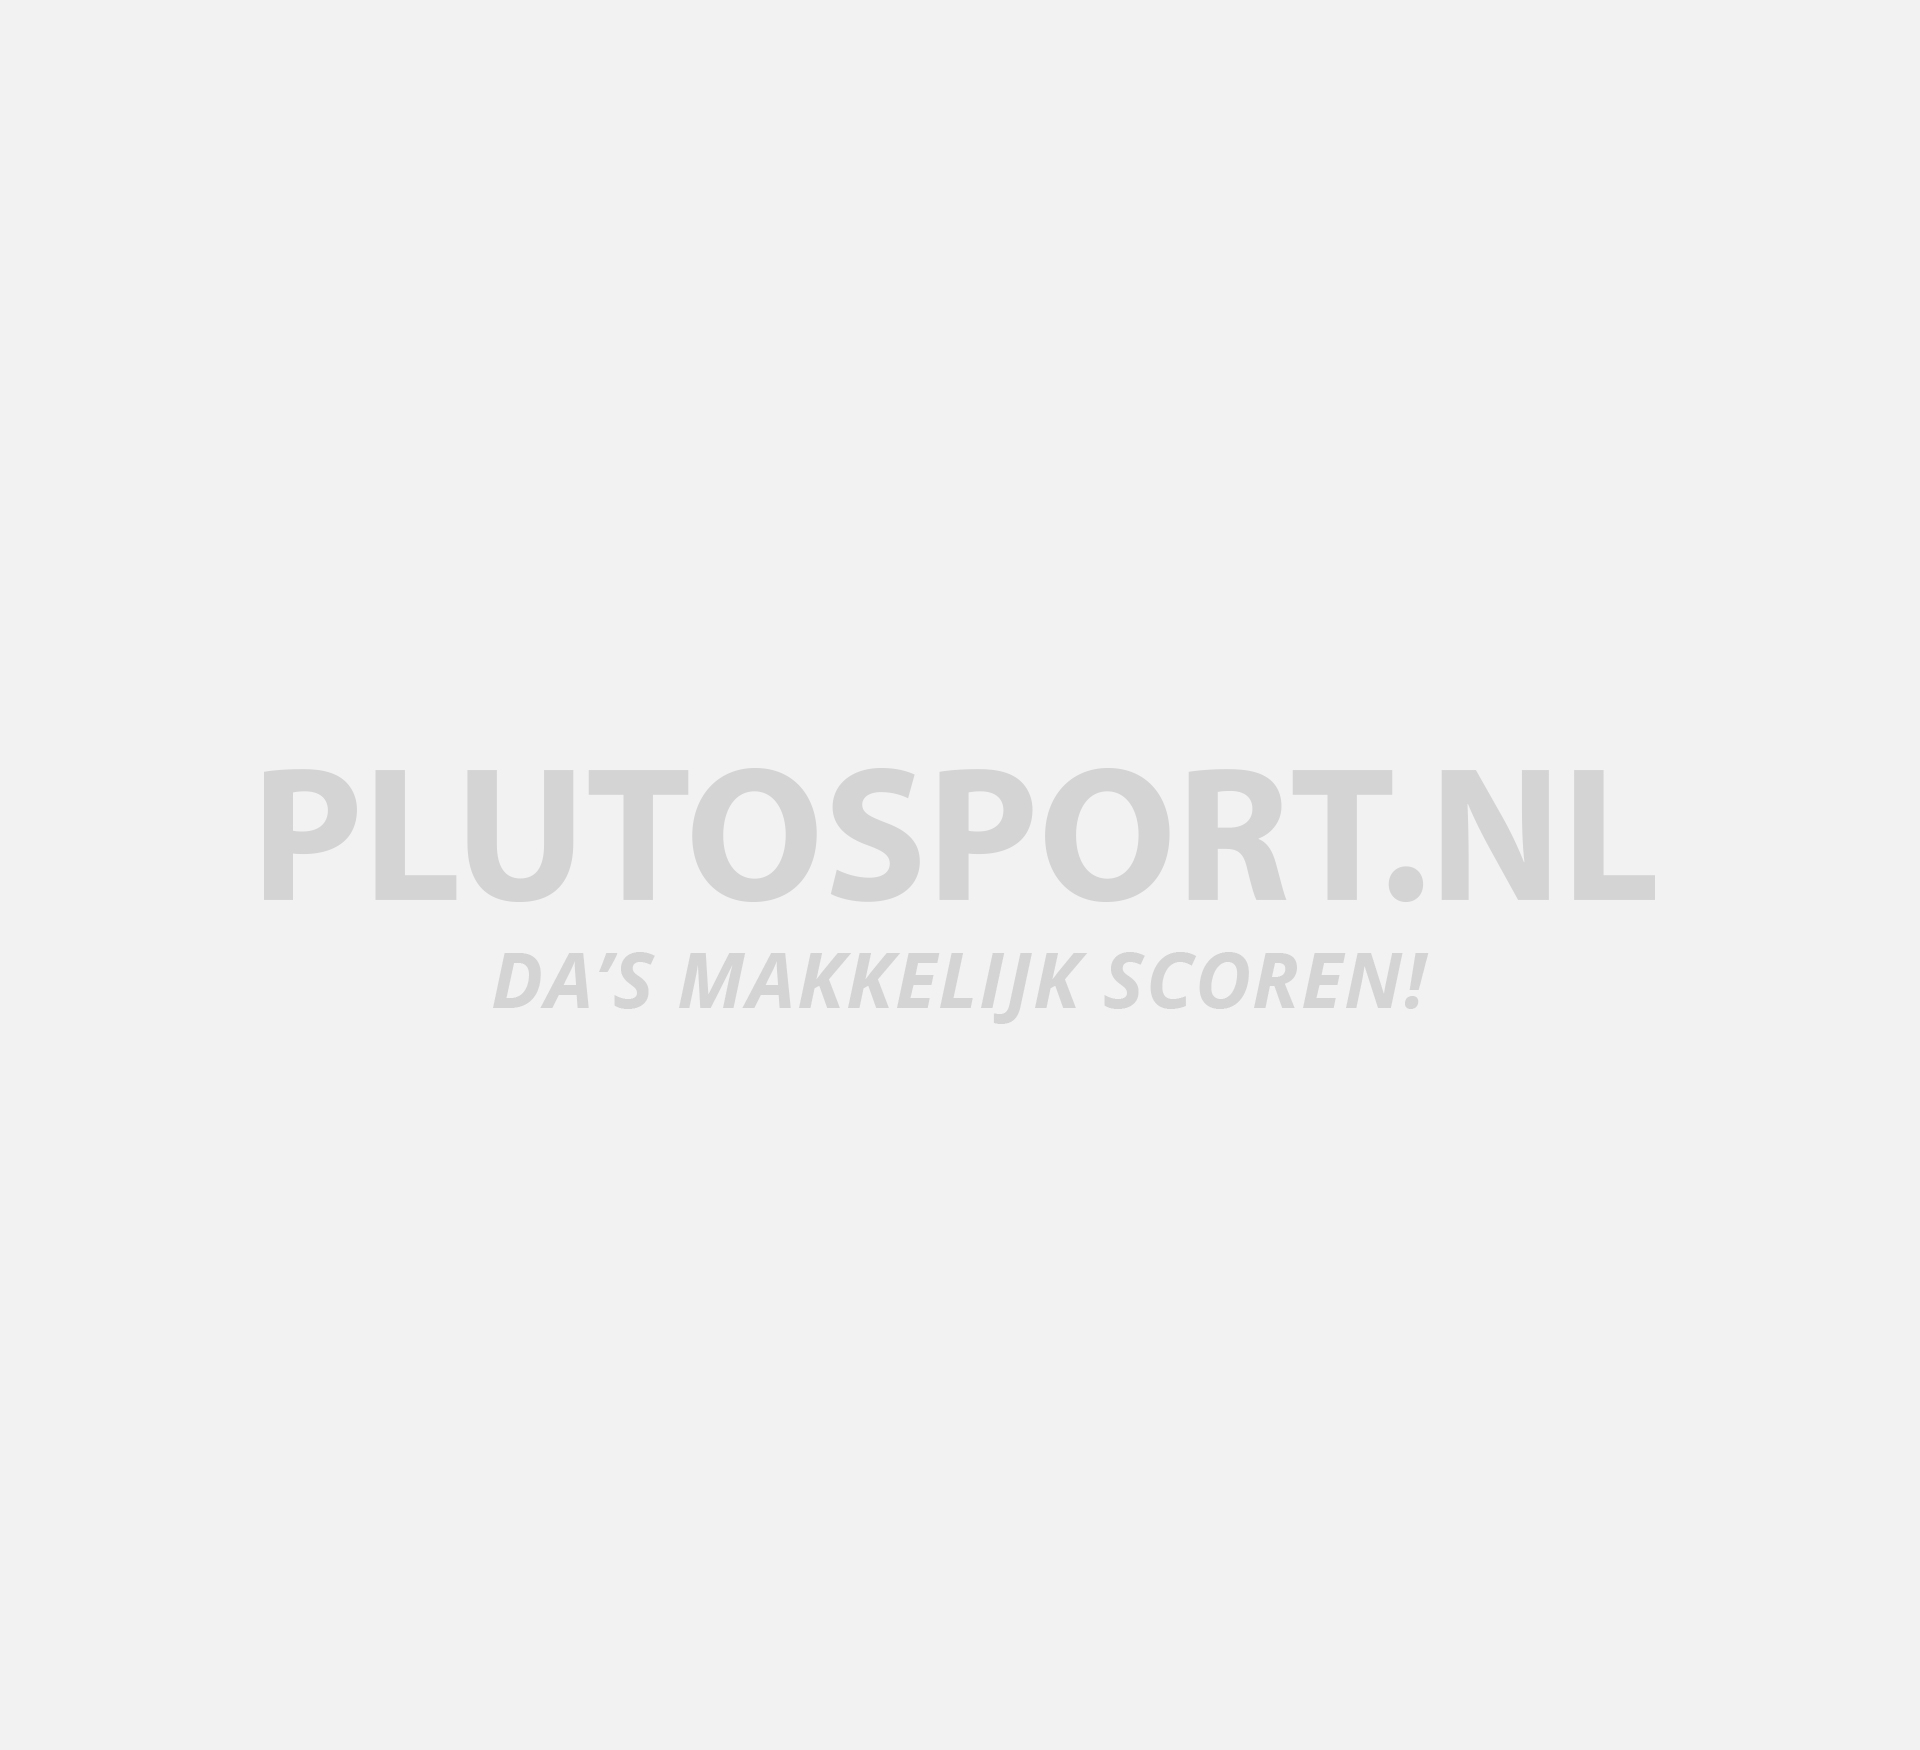 Super Pro No Bokshandschoenen | Plutosport